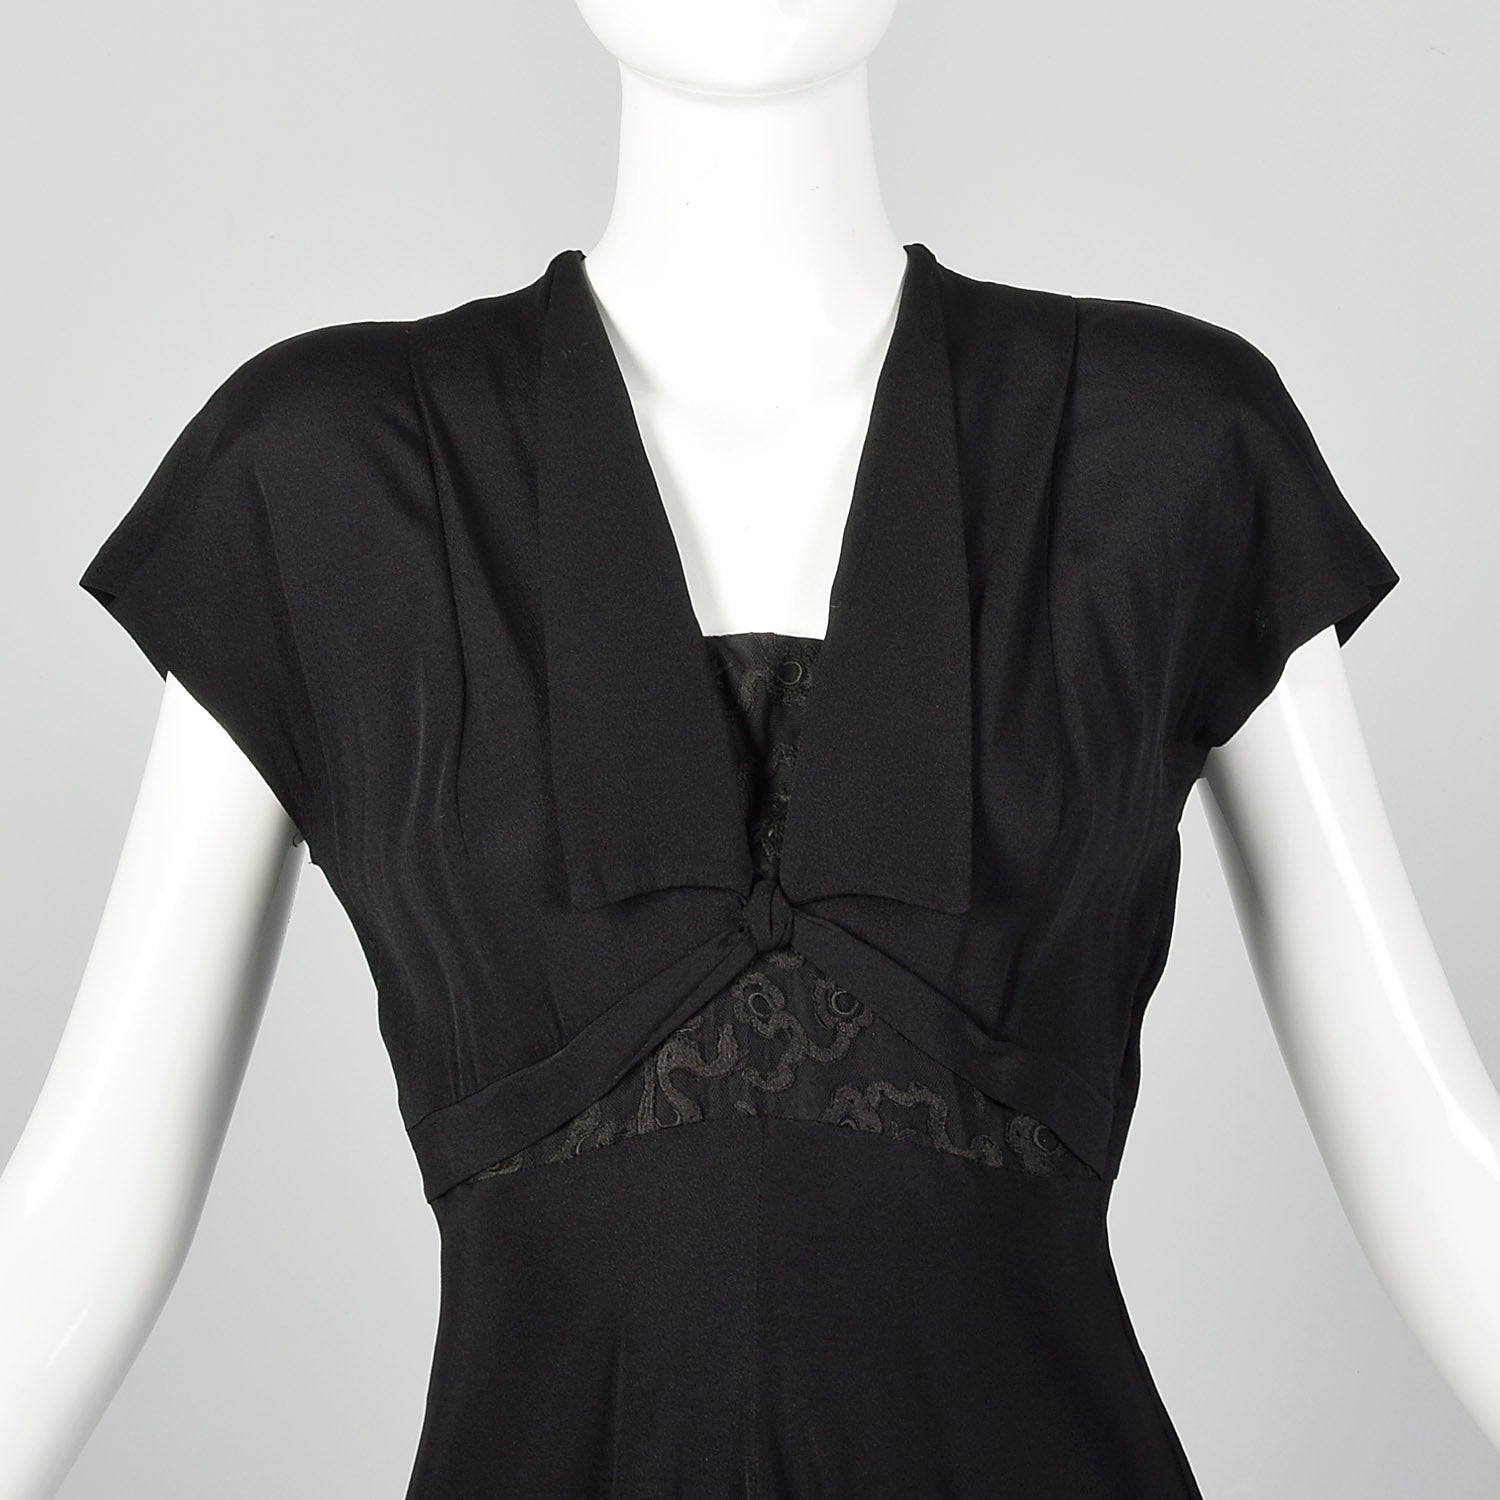 Small 1940s Black Dress